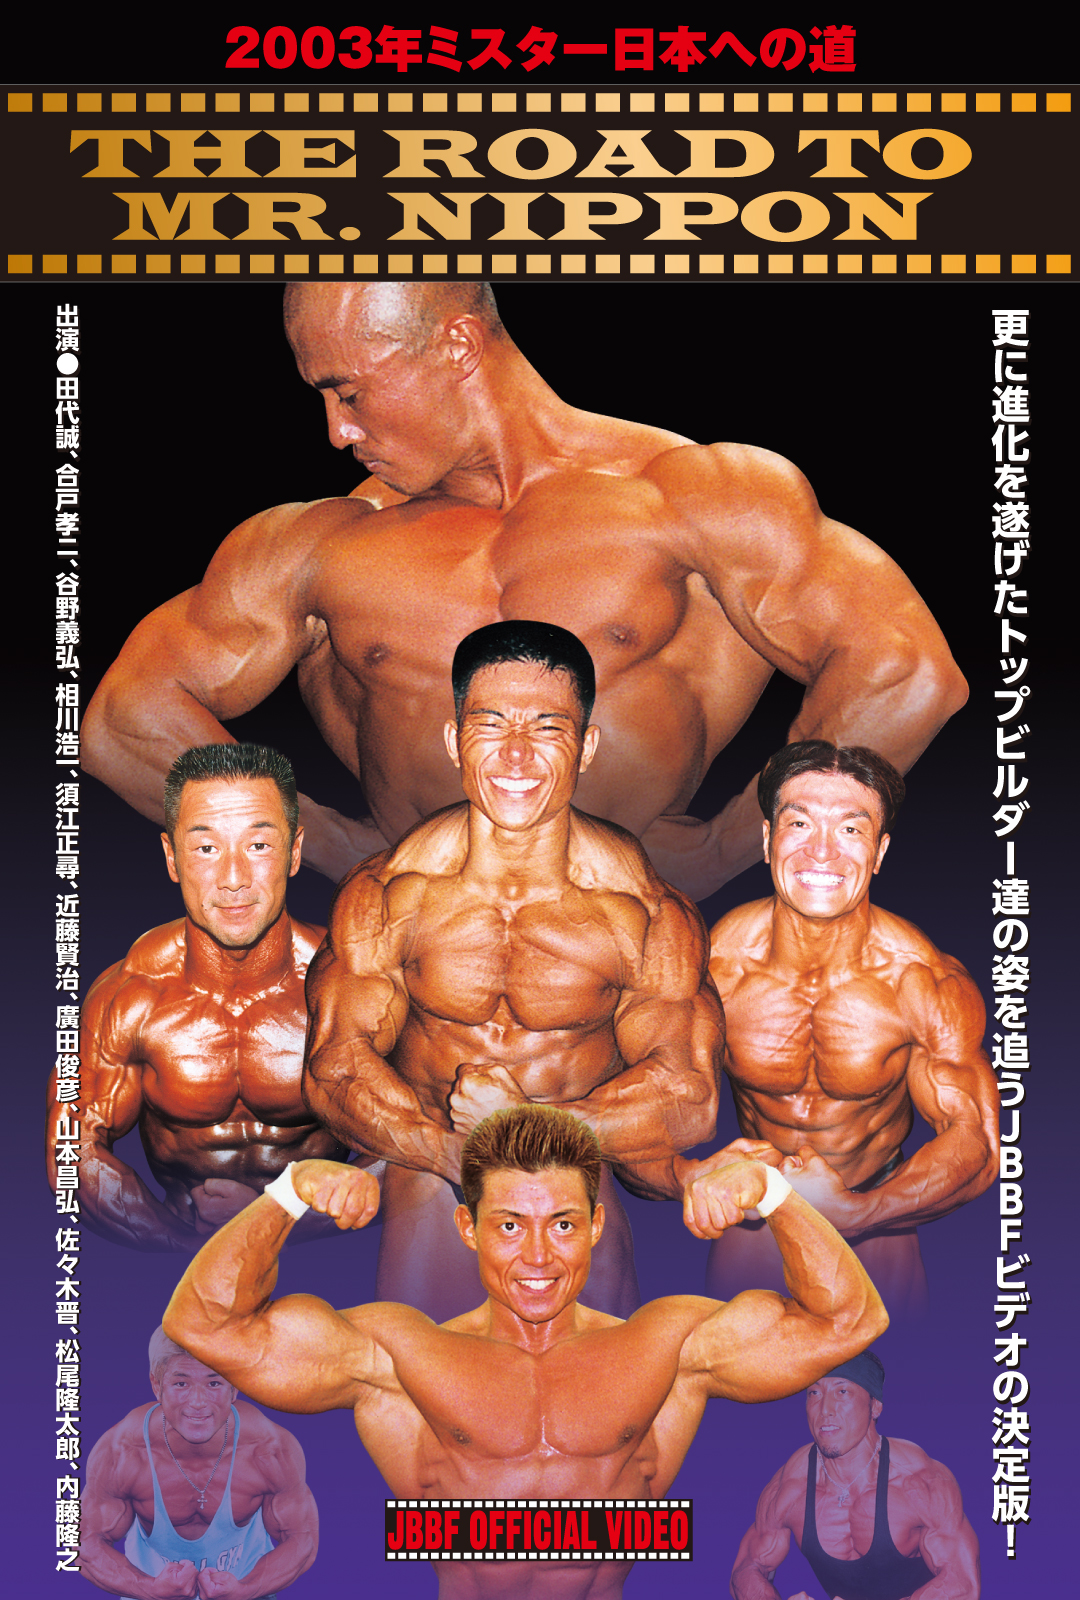 ボディビルドキュメントdvd Muscle Media Japan 05年 ミスター日本への道 Gold S Gym Ironman Web Shop 谷野義弘 赤の衝撃 鋼鉄の男 Dvd ボディビル Maksismt Lv